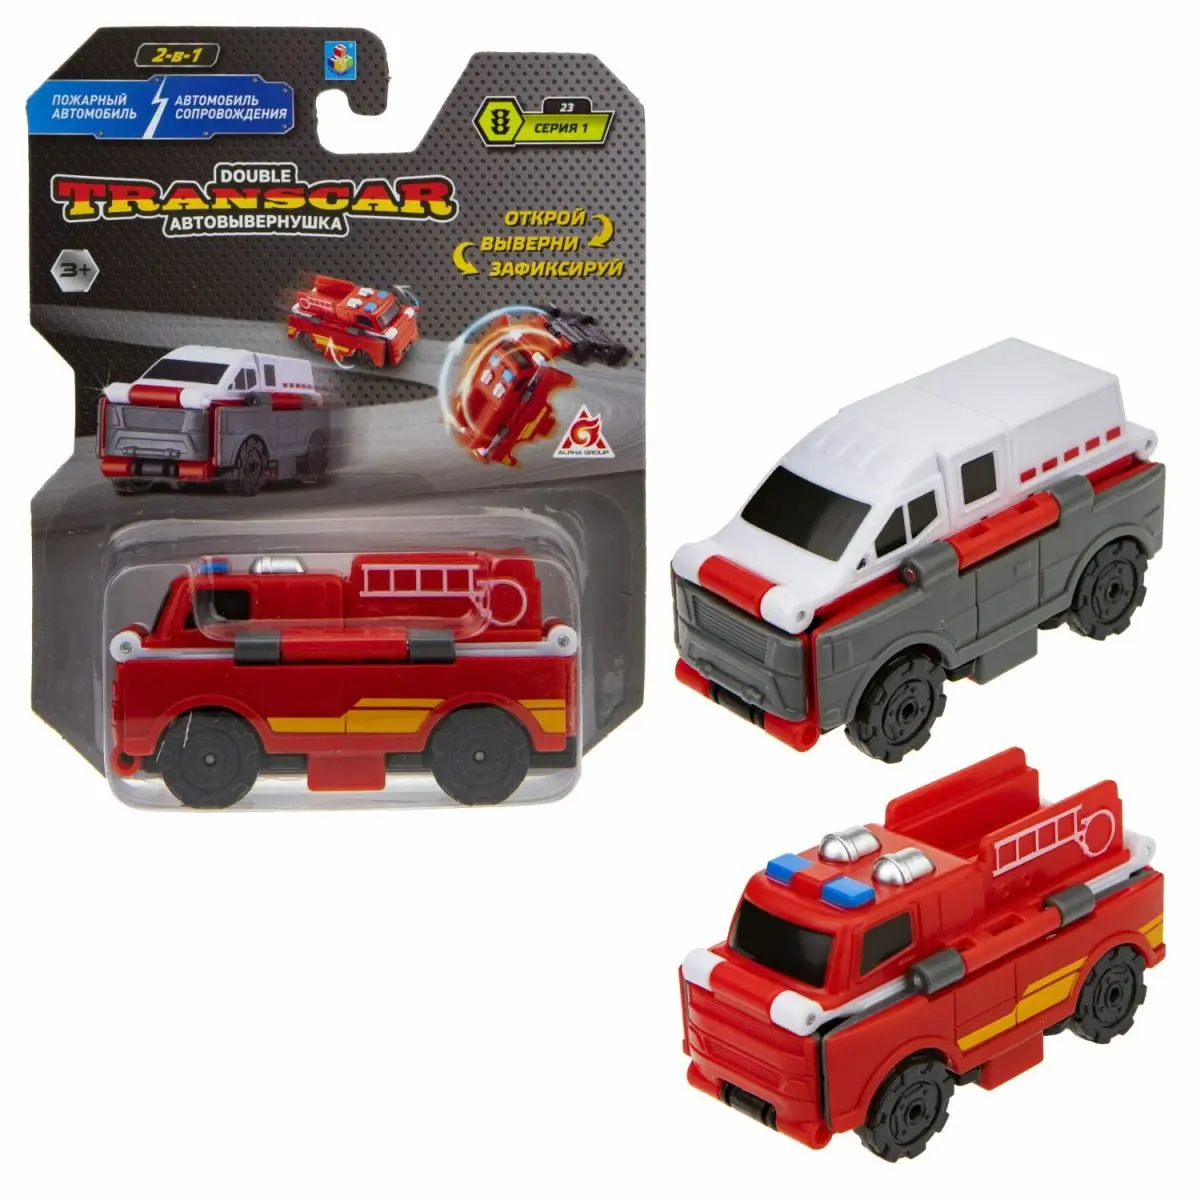 Transcar Double Пожарный автомобиль - Траспортная полиция